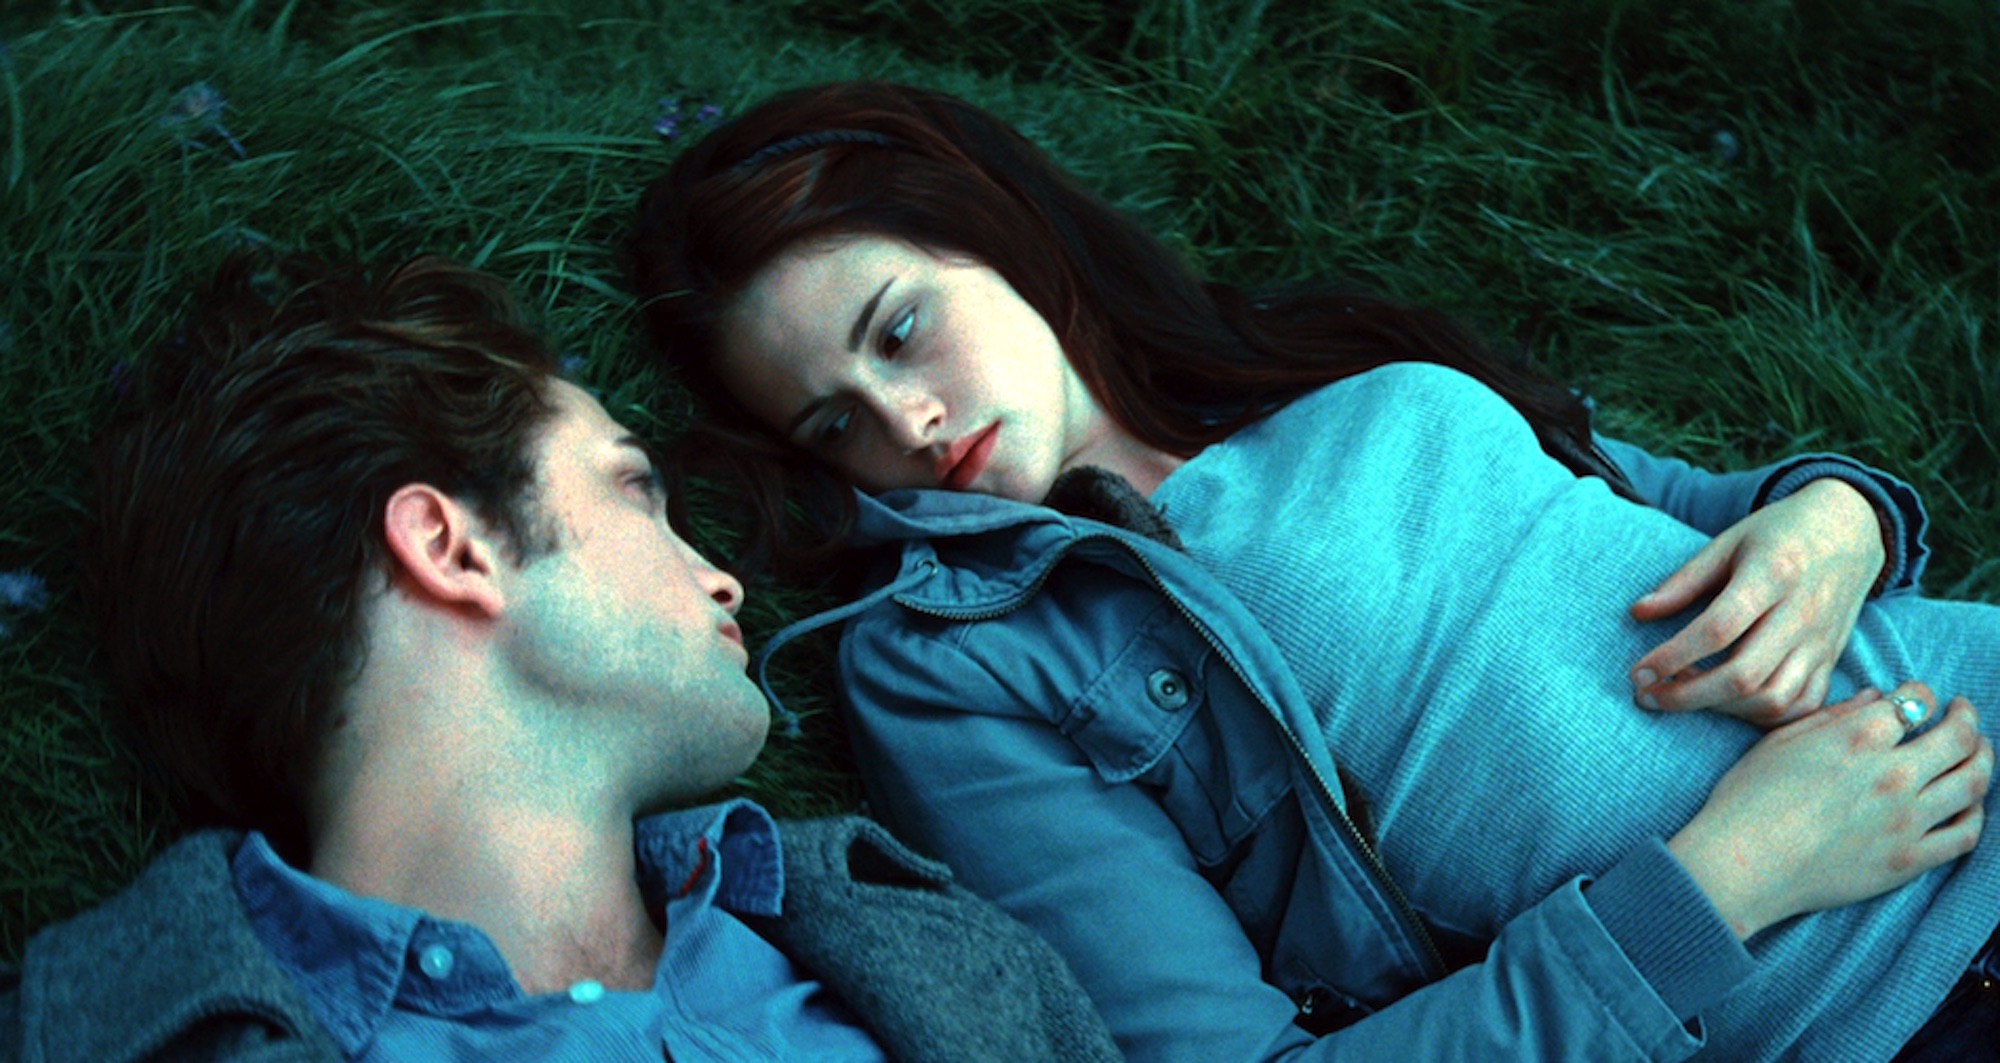 Edward Cullen (Robert Pattinson) and Bella Swan (Kristen Stewart) in the meadow in 'Twilight.'